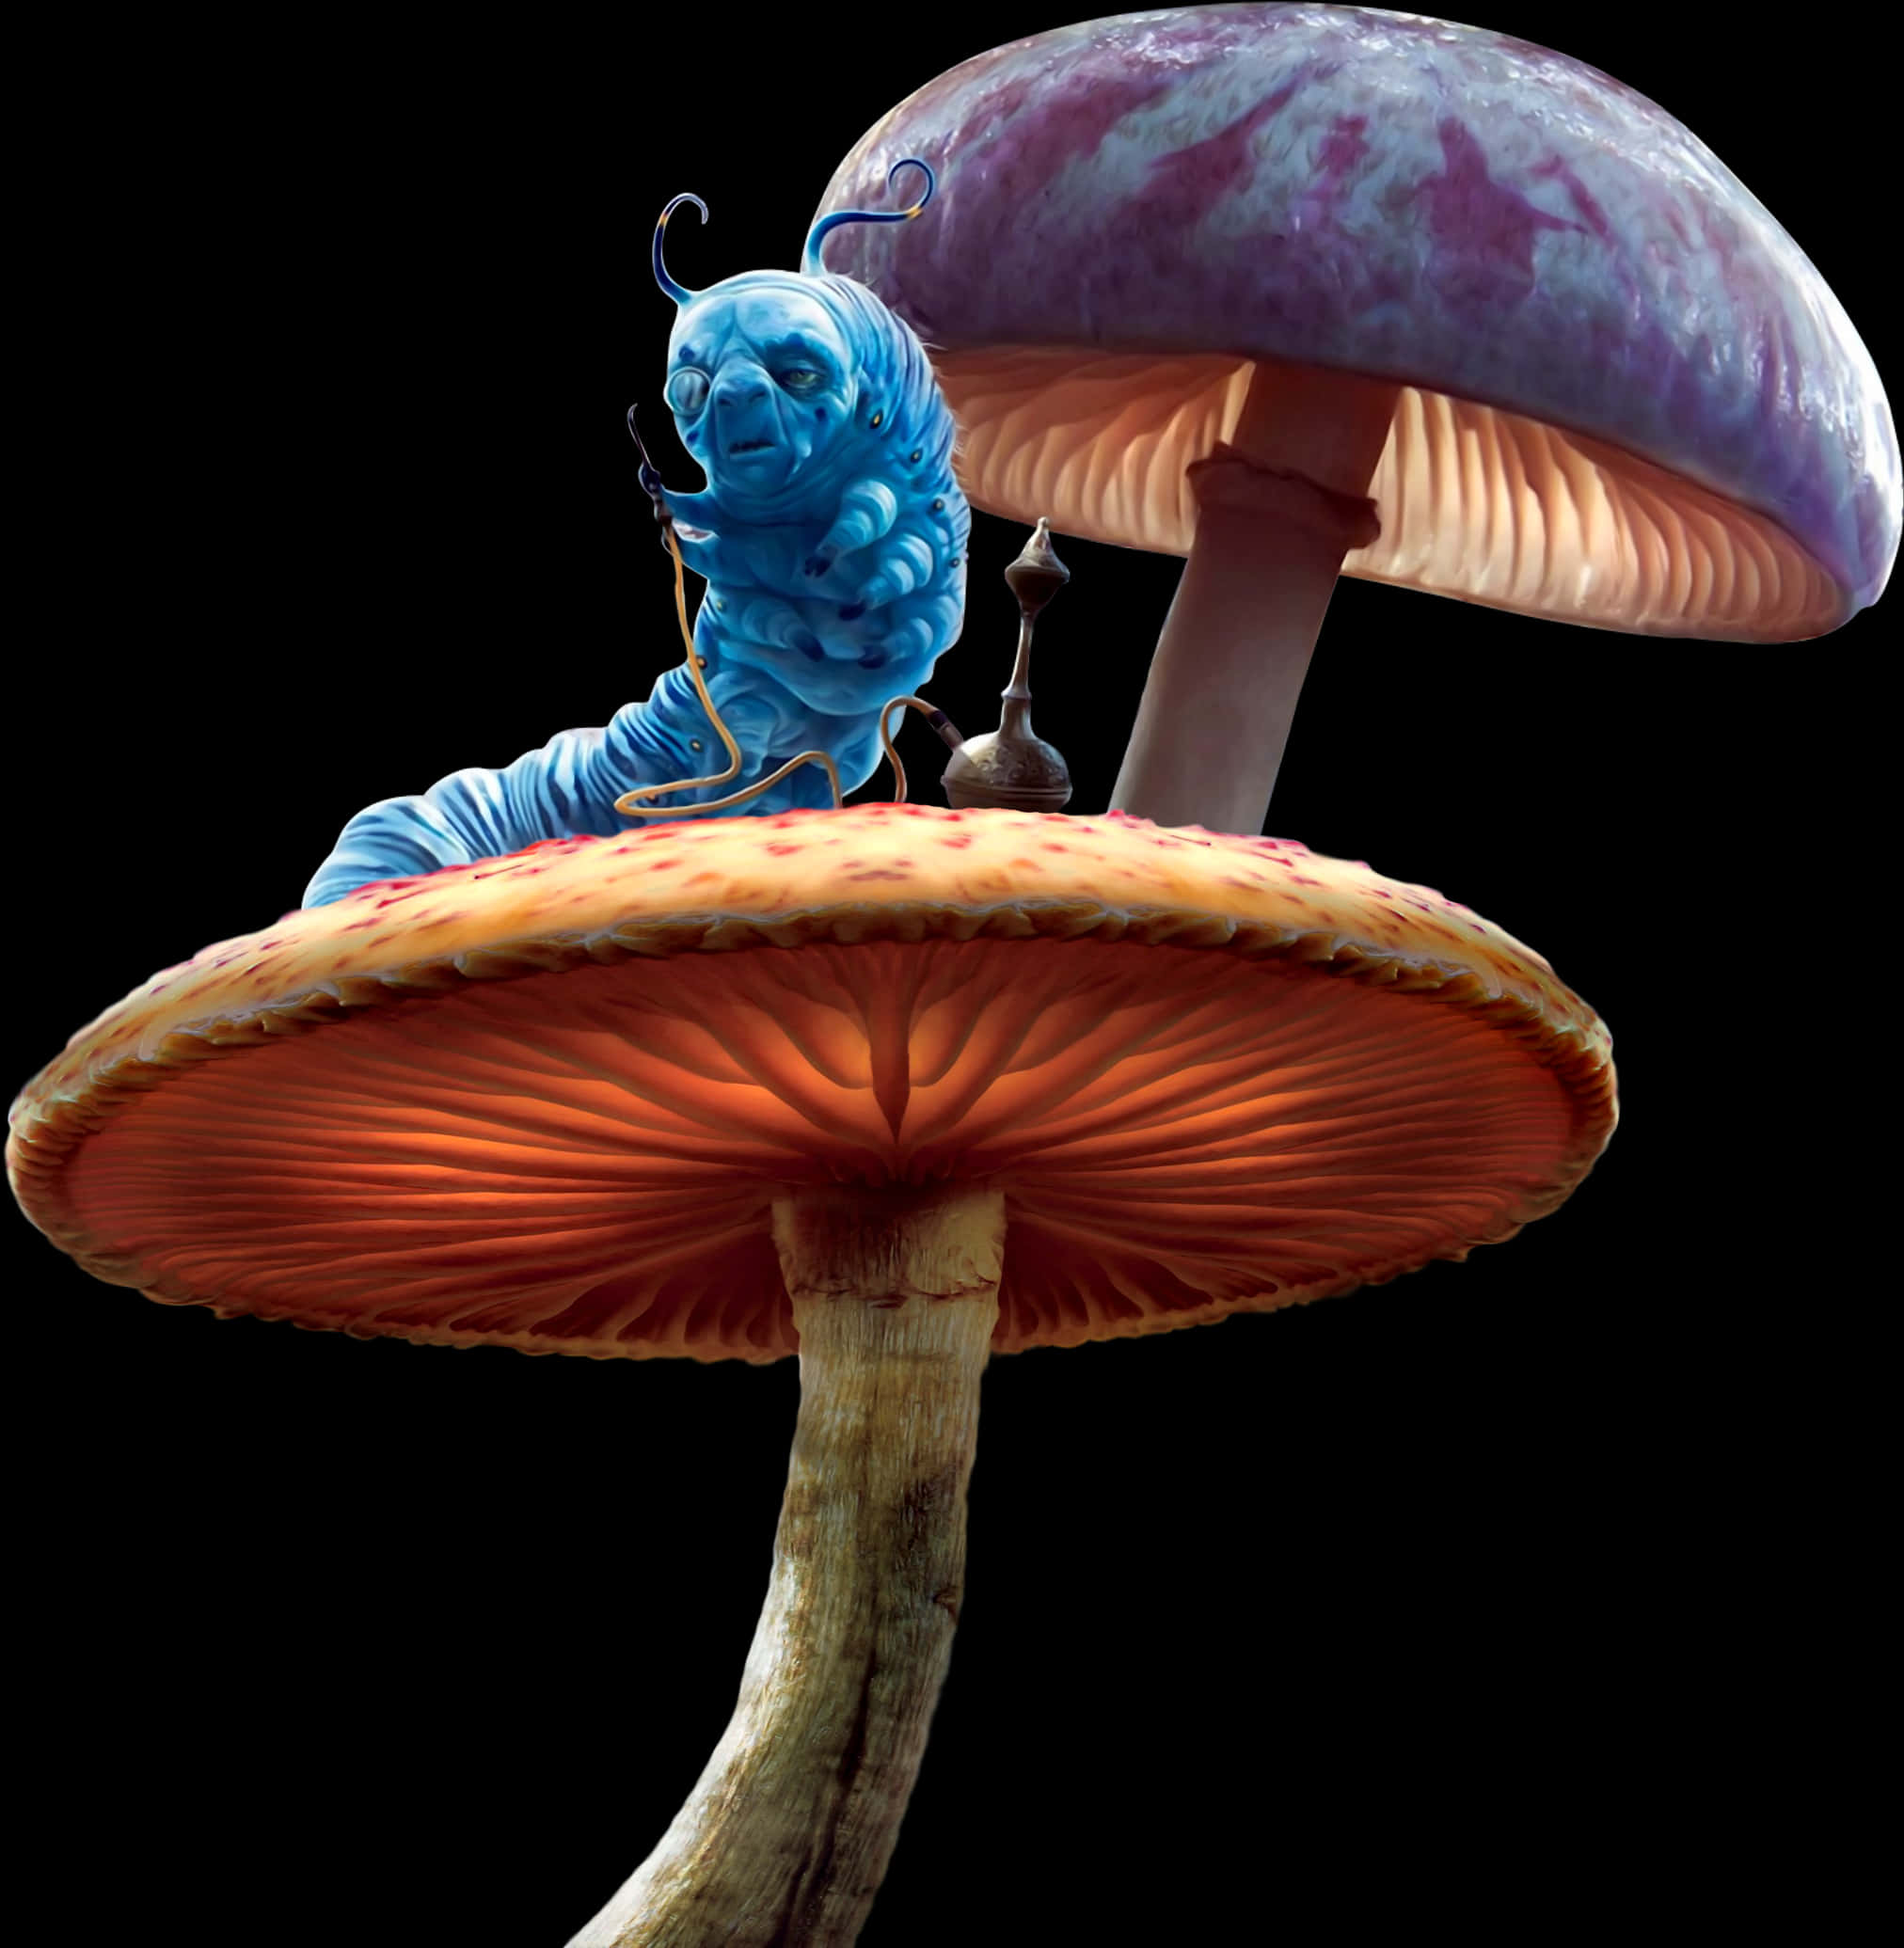 Caterpillar Mushroom Mushrooms Aliceinwonderland Alicei - Alice In Wonderland Caterpillar On Mushroom, Hd Png Download